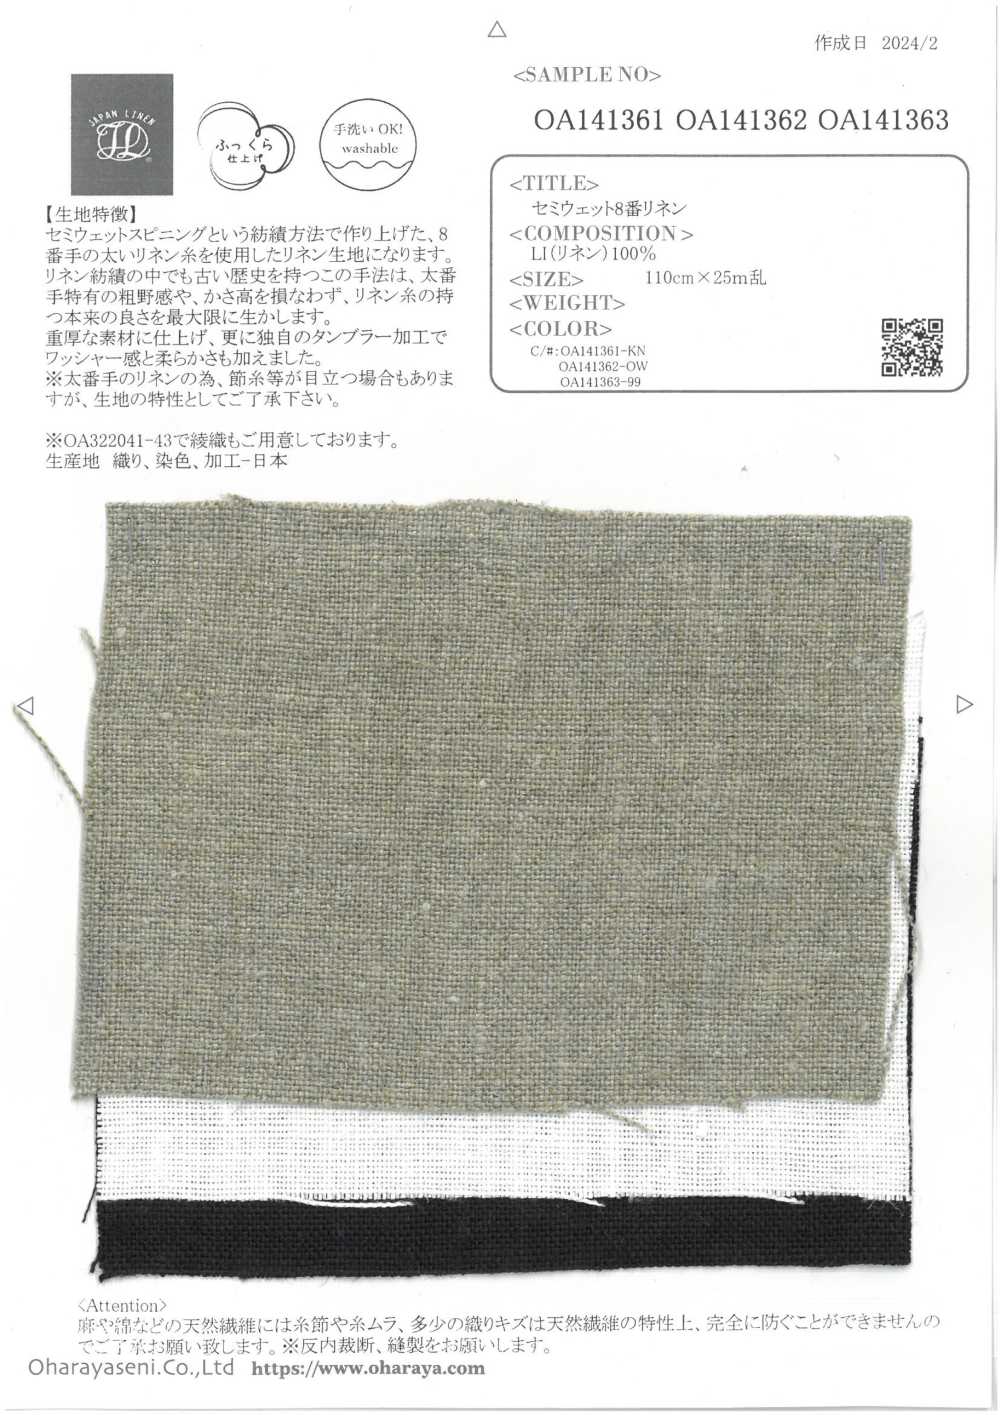 OA141363 Linho Semi-úmido Nº 8[Têxtil / Tecido] Oharayaseni